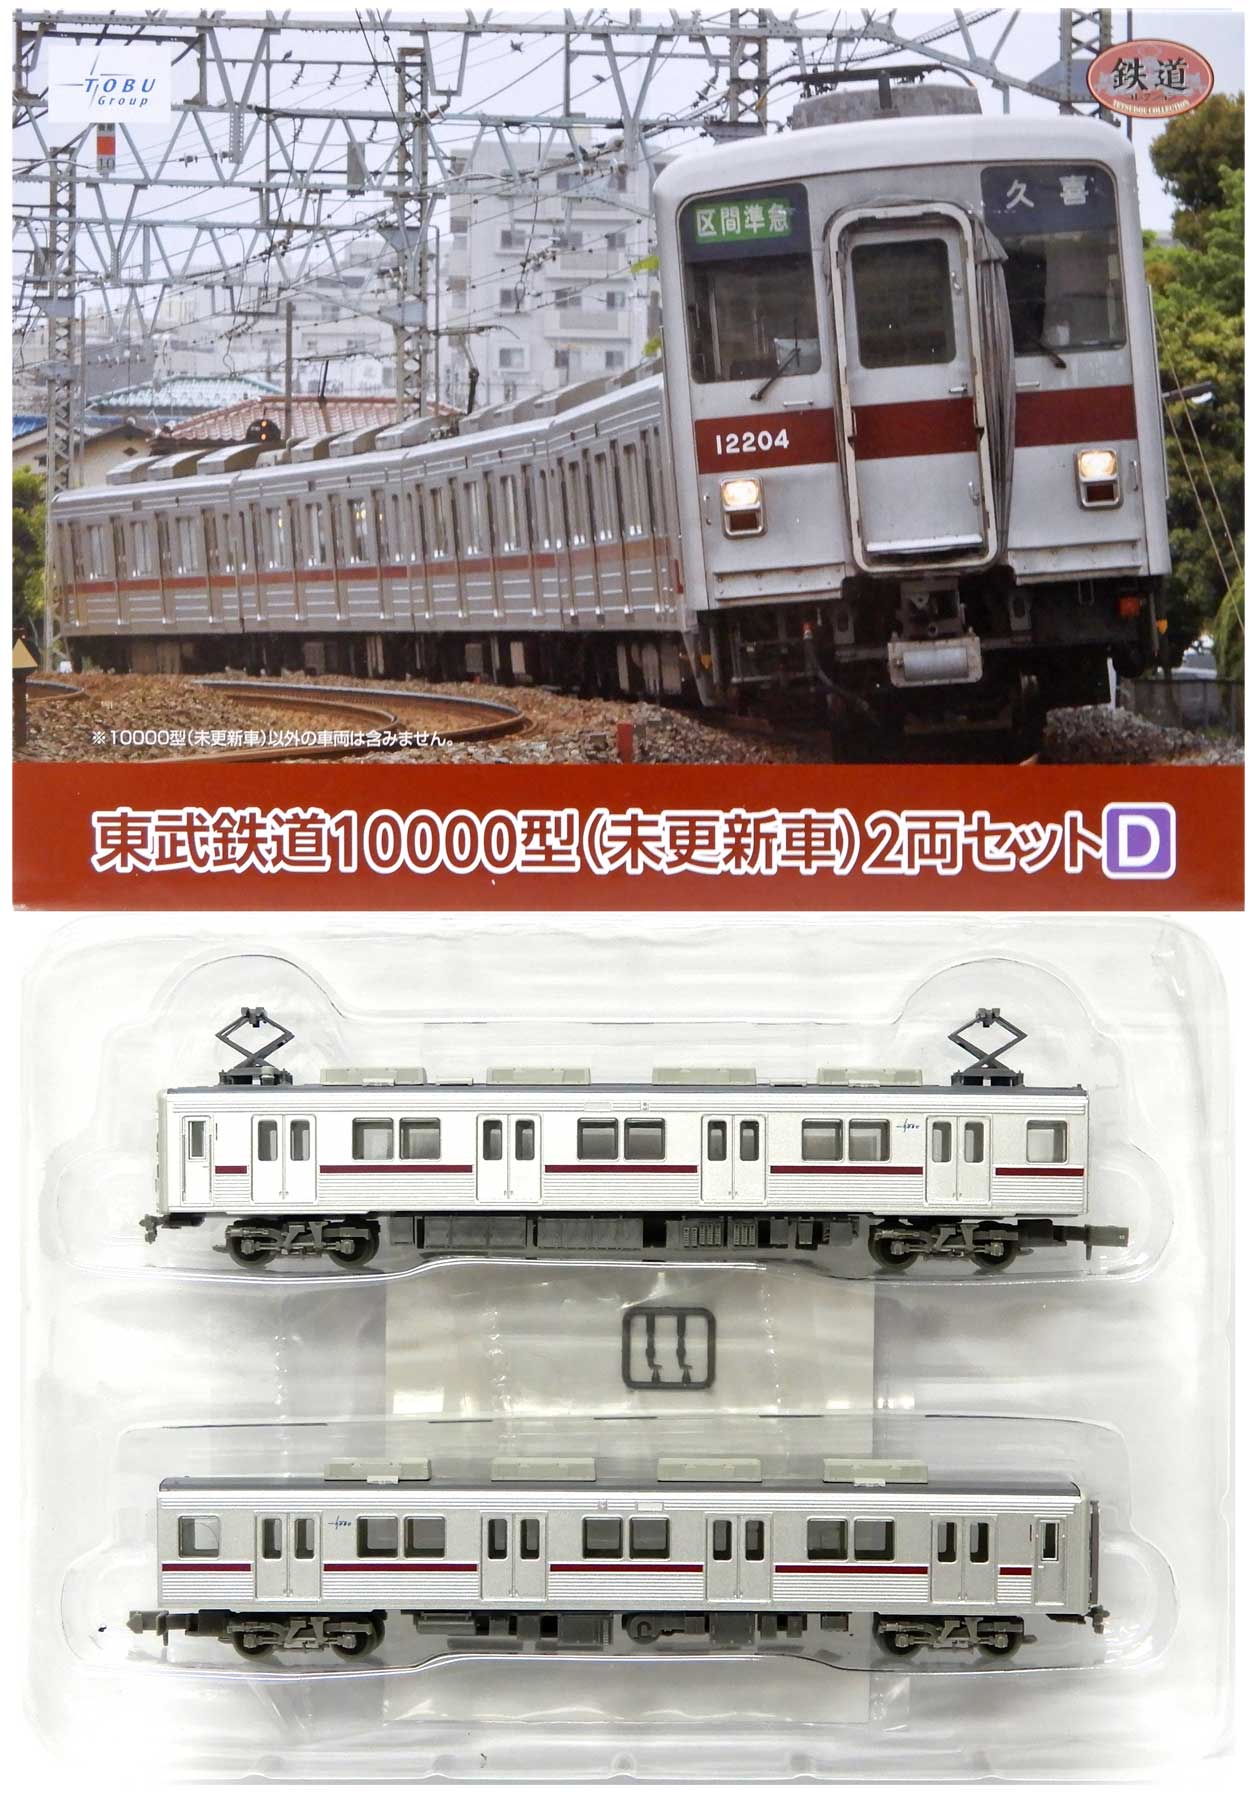 公式]鉄道模型(ジオコレ・Bトレ、鉄道コレクション(関東私鉄)、東武